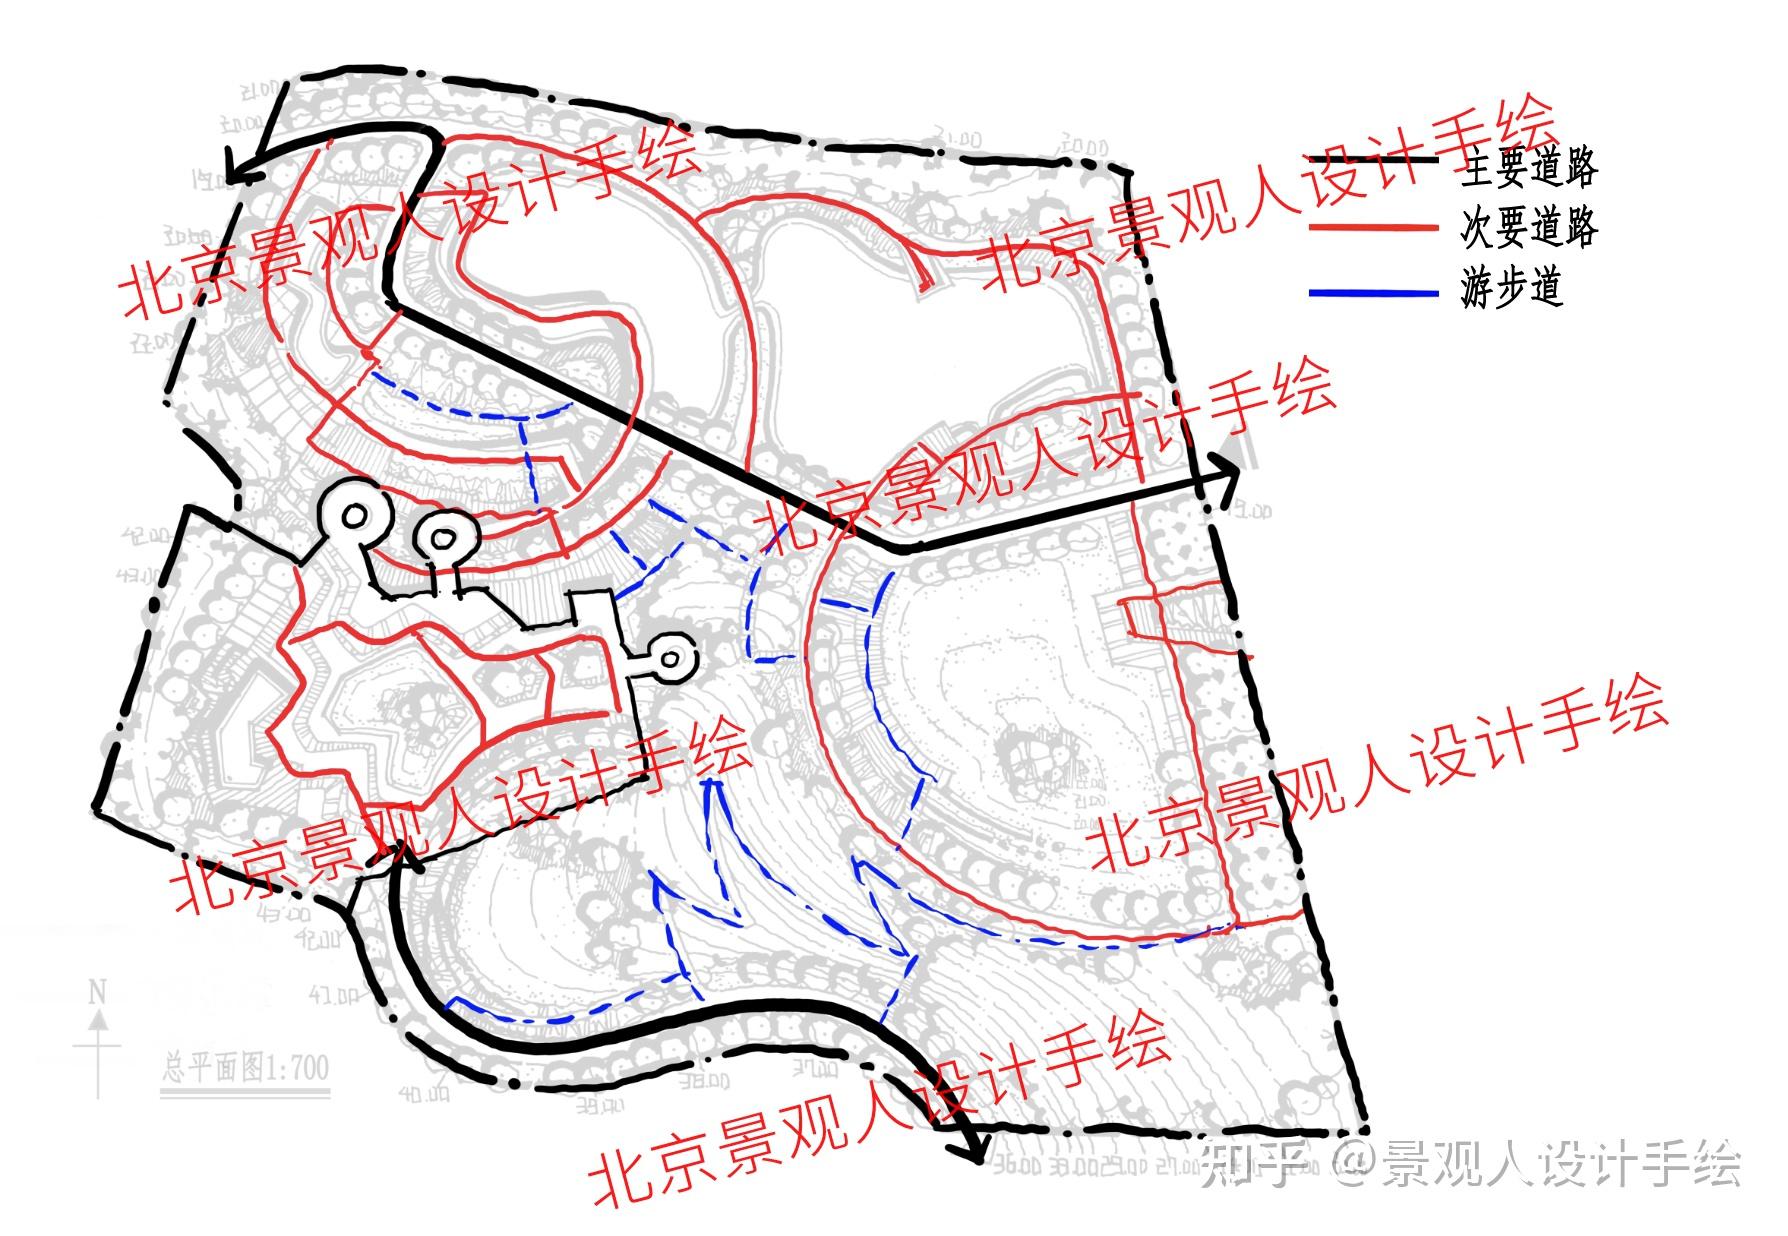 真题分析:同济大学2011年石灰窑公园设计